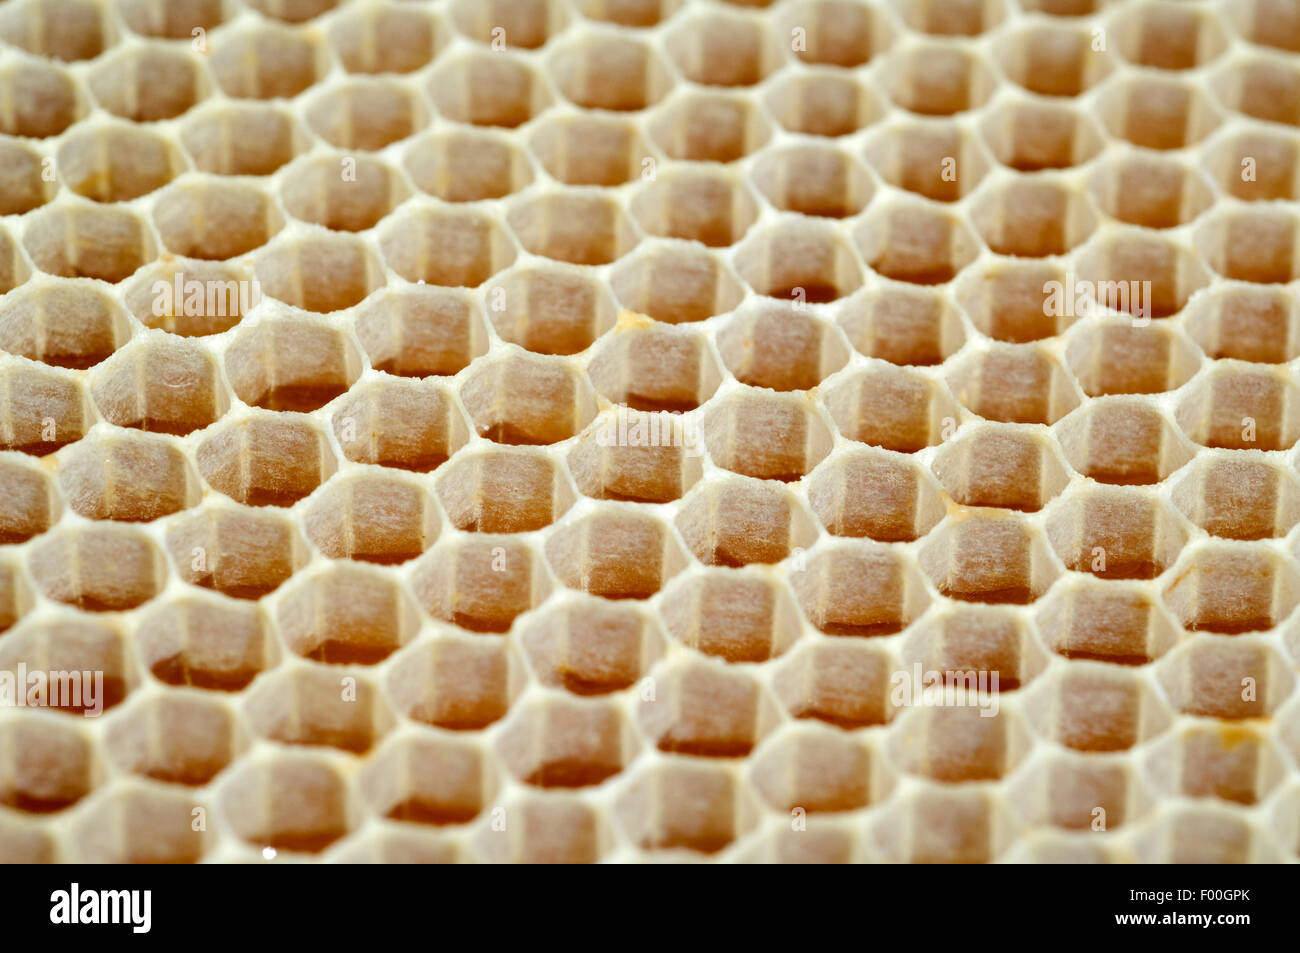 TianranRT Bienenwabe Biene Wachs Grundierung Bienenstock Wachs Rahmen Basis Betttücher Biene Kamm Honig Rahmen